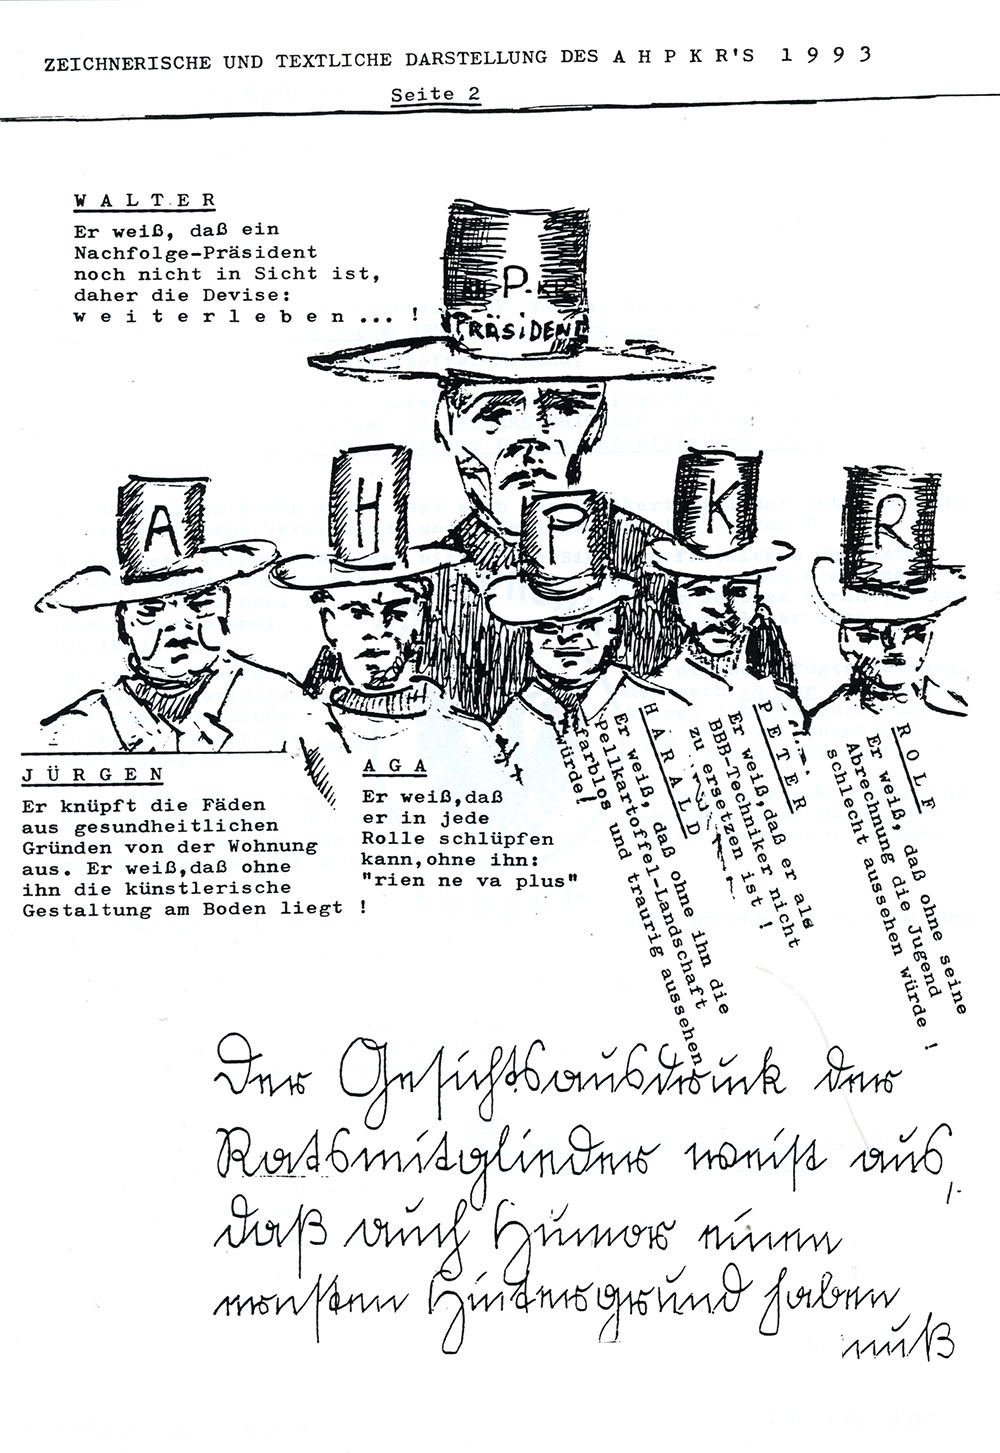 Sonderheft Pellkartoffelzeitung 35 Jahre Pellkartoffelessen 06-02-1993. Eine Festschrift.